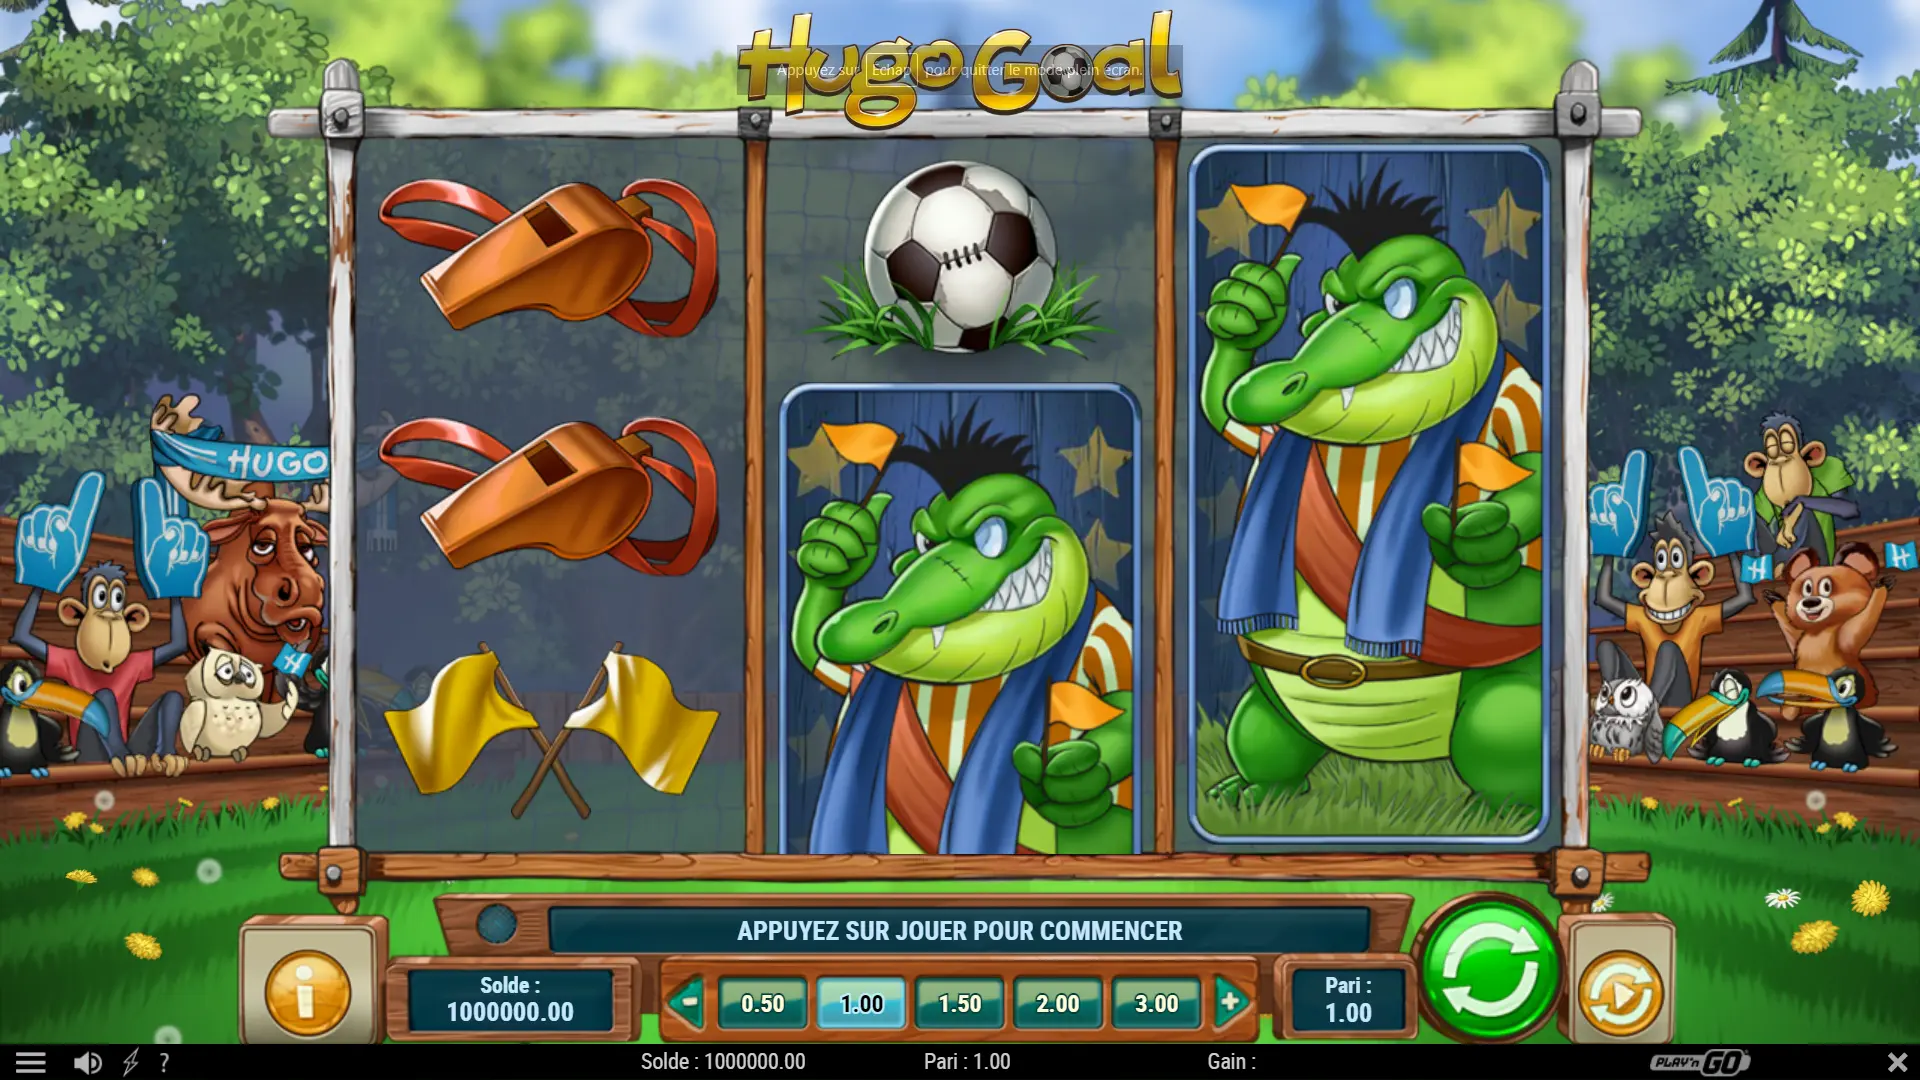 The Hugo Goal slot machine by Play'n GO